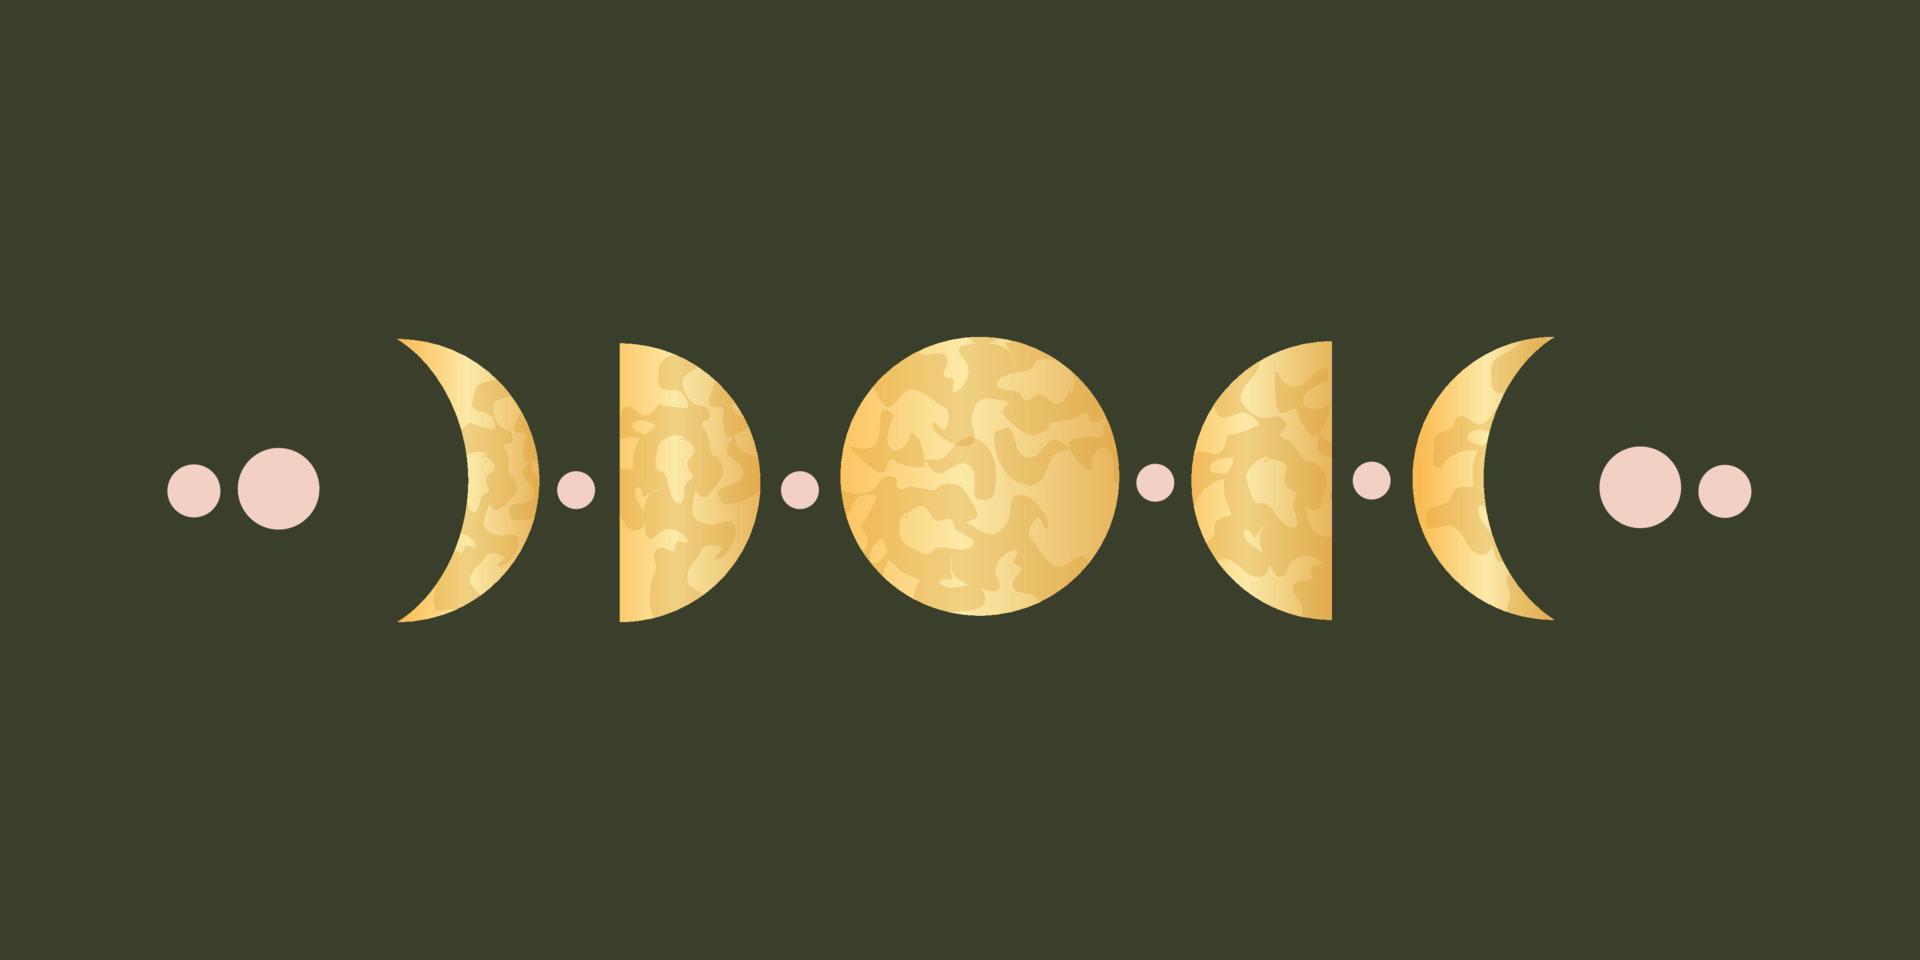 fases de la luna para la astrología sagrada pagana. ciclo completo celestial de lunas con decoraciones. ilustración vectorial vector